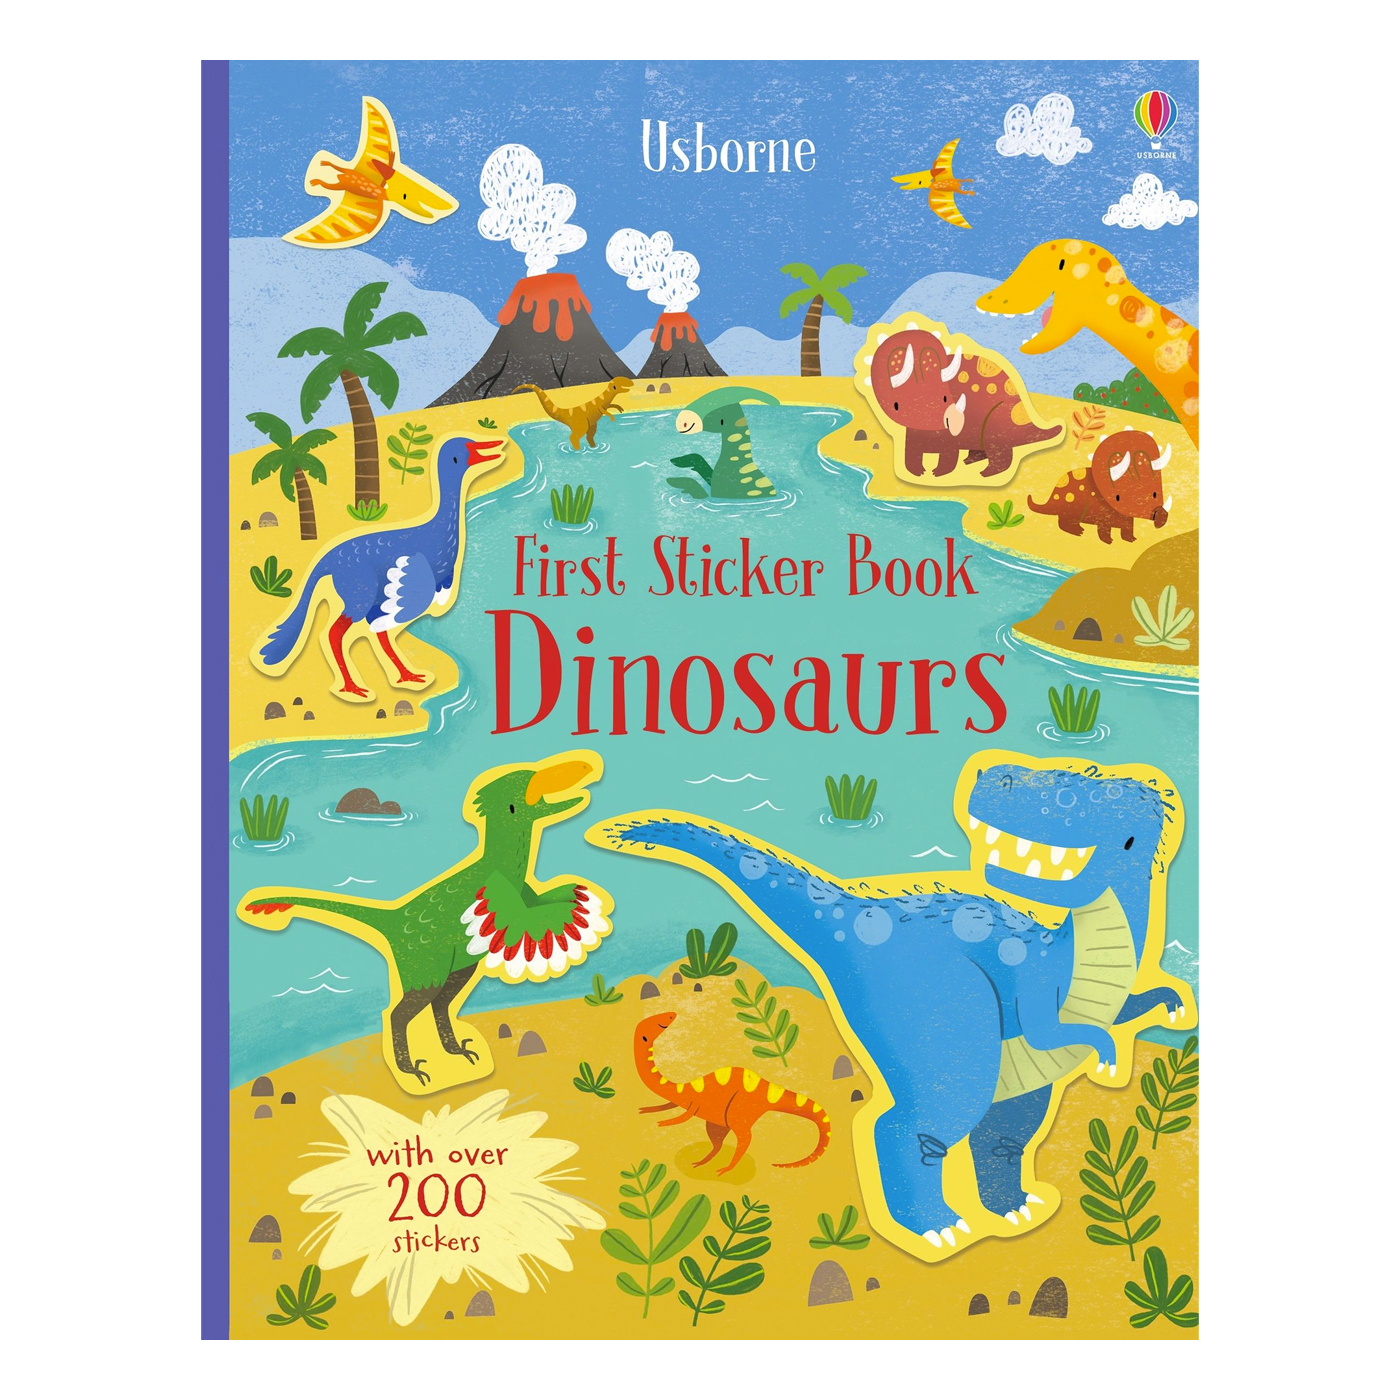  First Sticker Book Dinosaurs